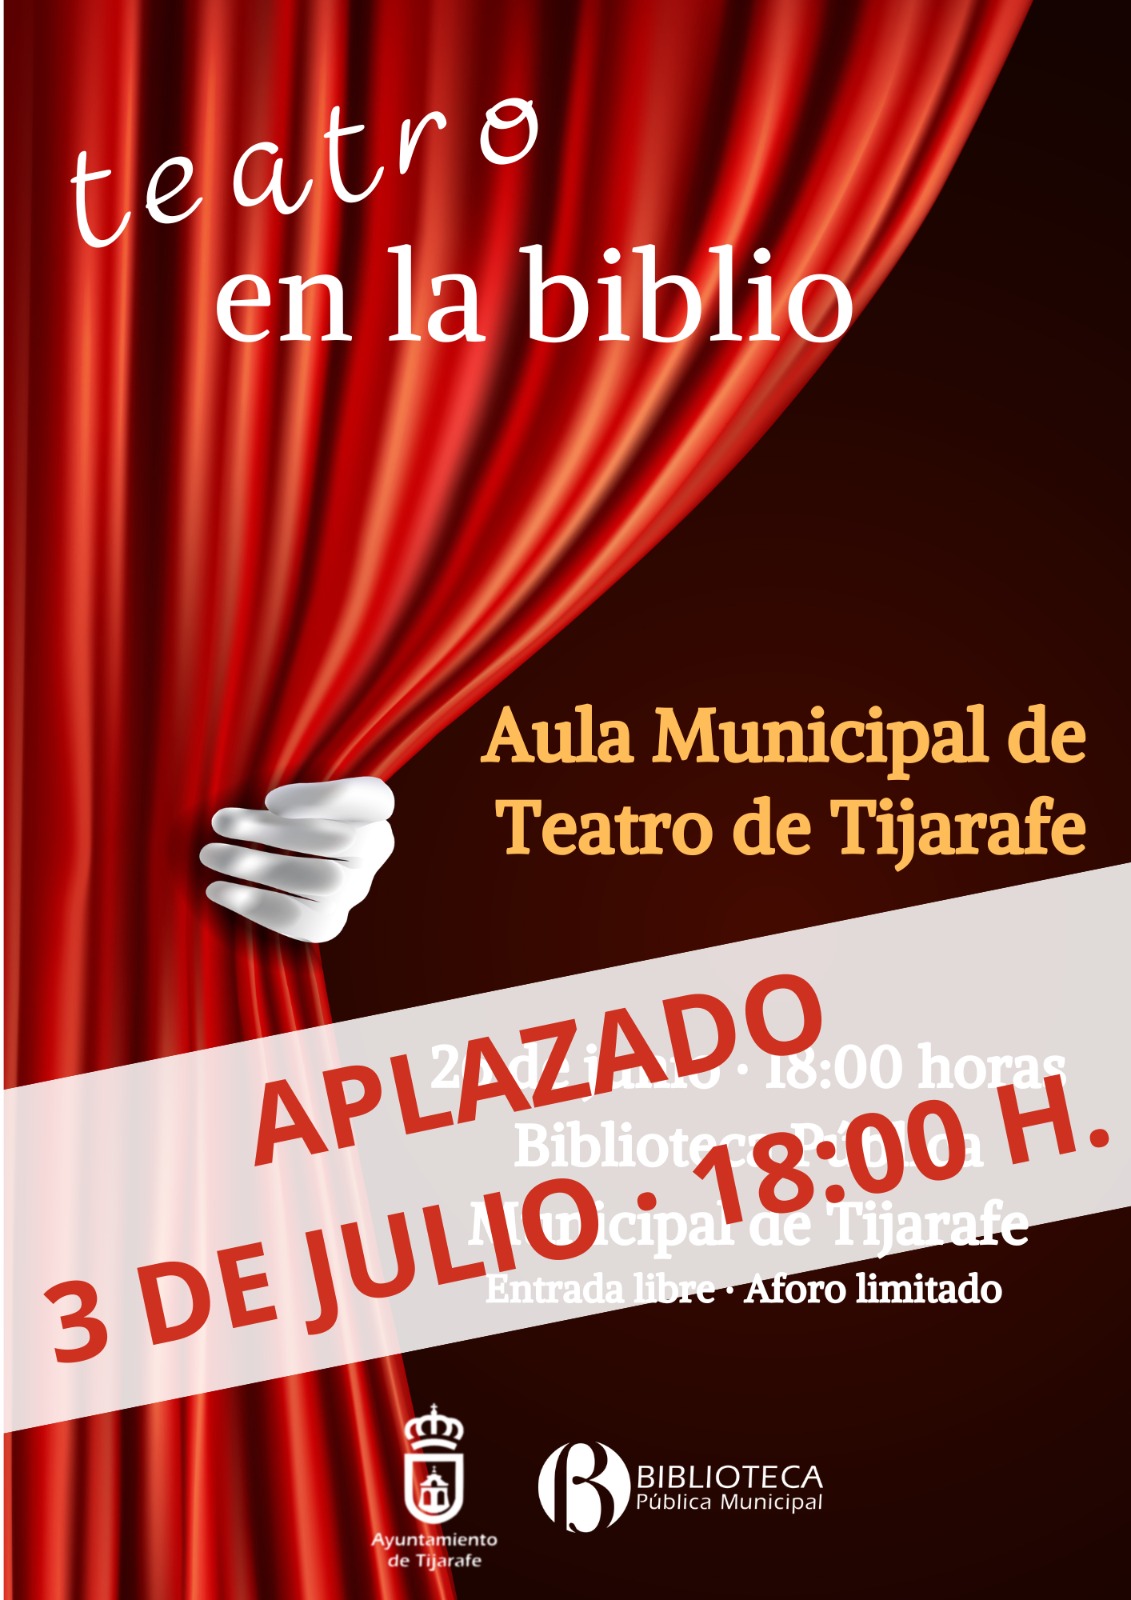 Teatro en la biblio – Aula Municipal de Teatro de Tijarafe